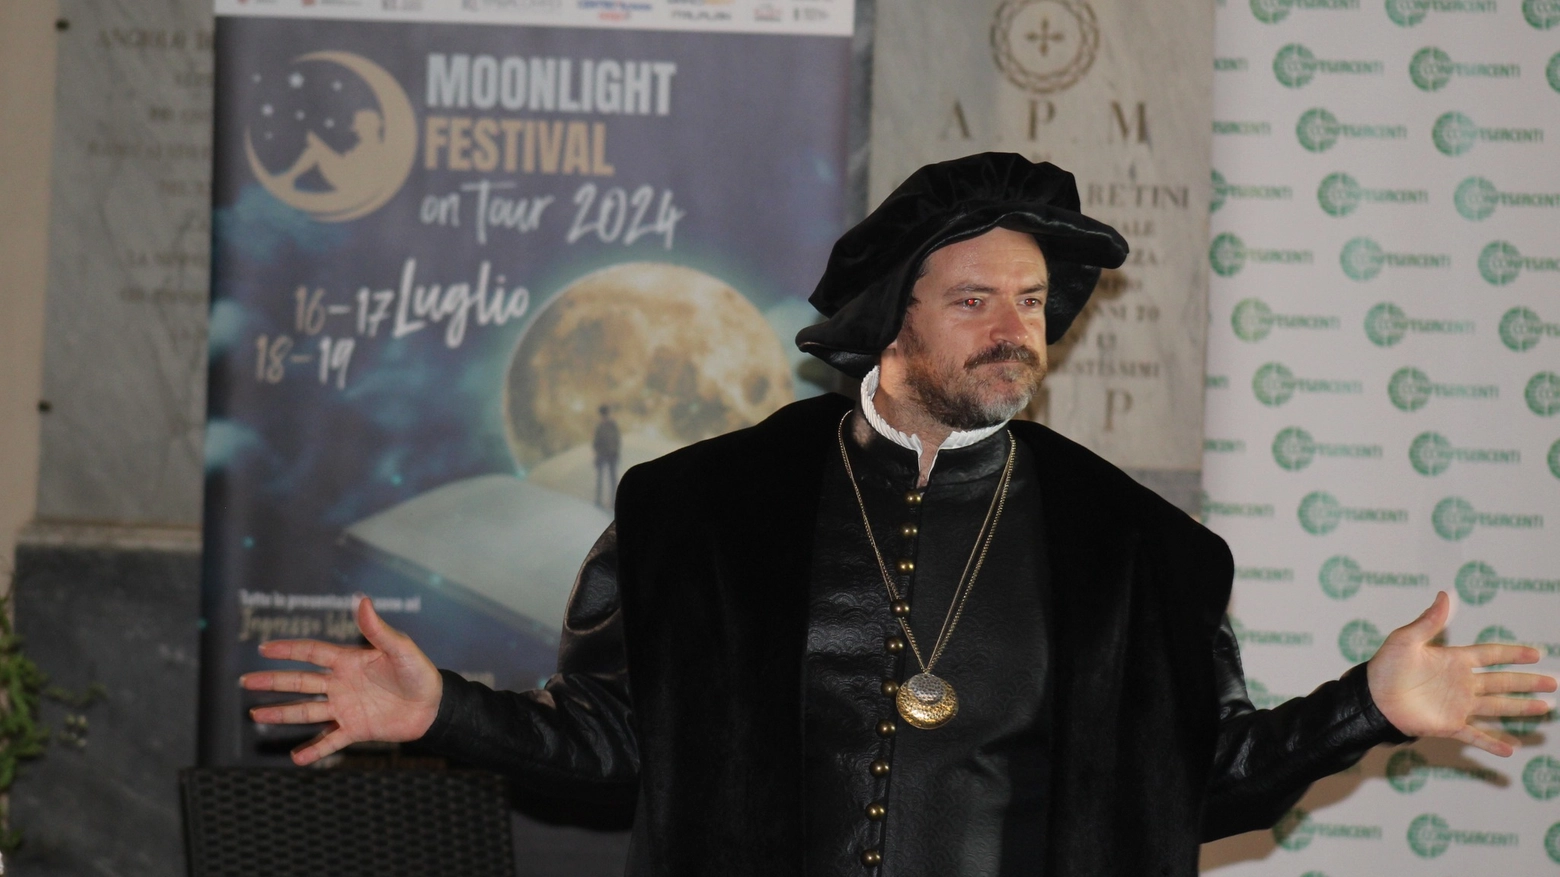 Il Moonlight Festival on tour, domani, martedì 23 luglio alle 21 celebra Giorgio Vasari